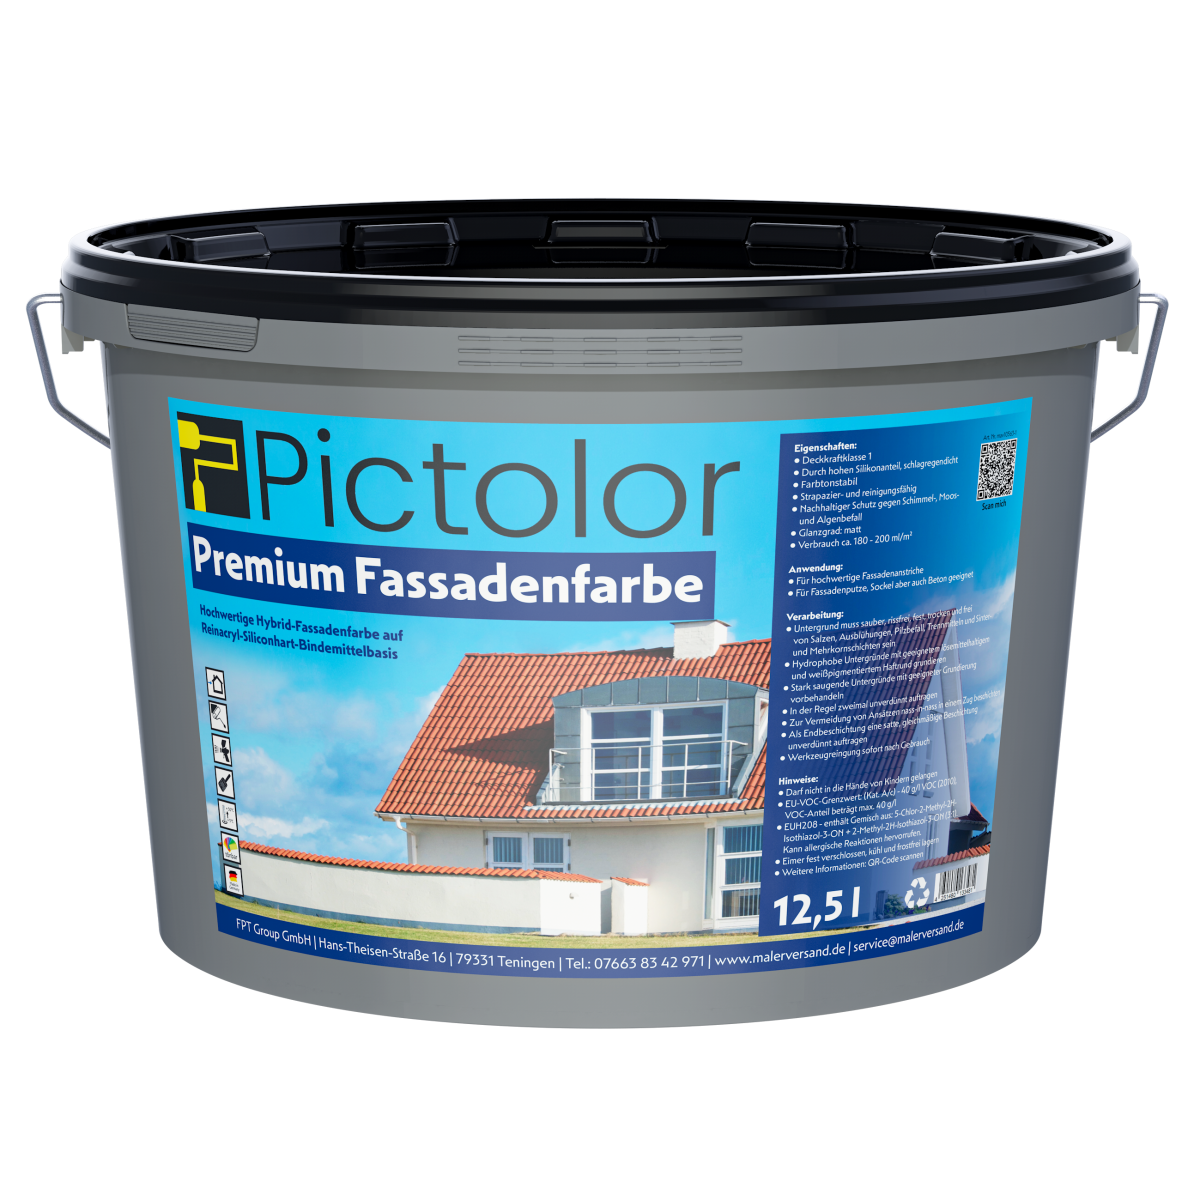 Pictolor® Premium Fassadenweiß Hybrid-Fassadenfarbe von Pictolor